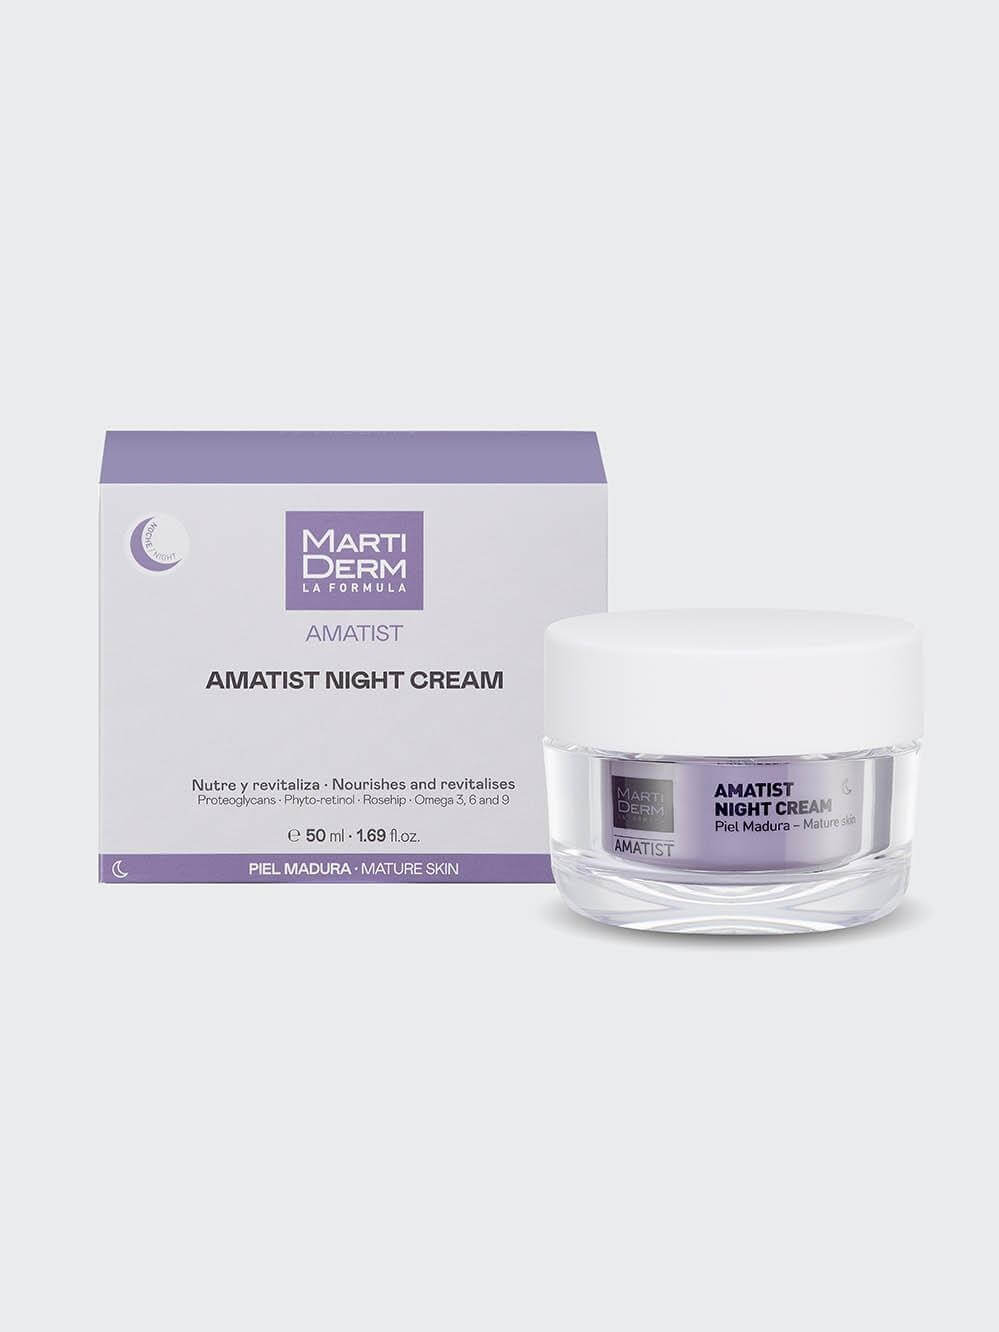 Caja de Amatist Night Cream